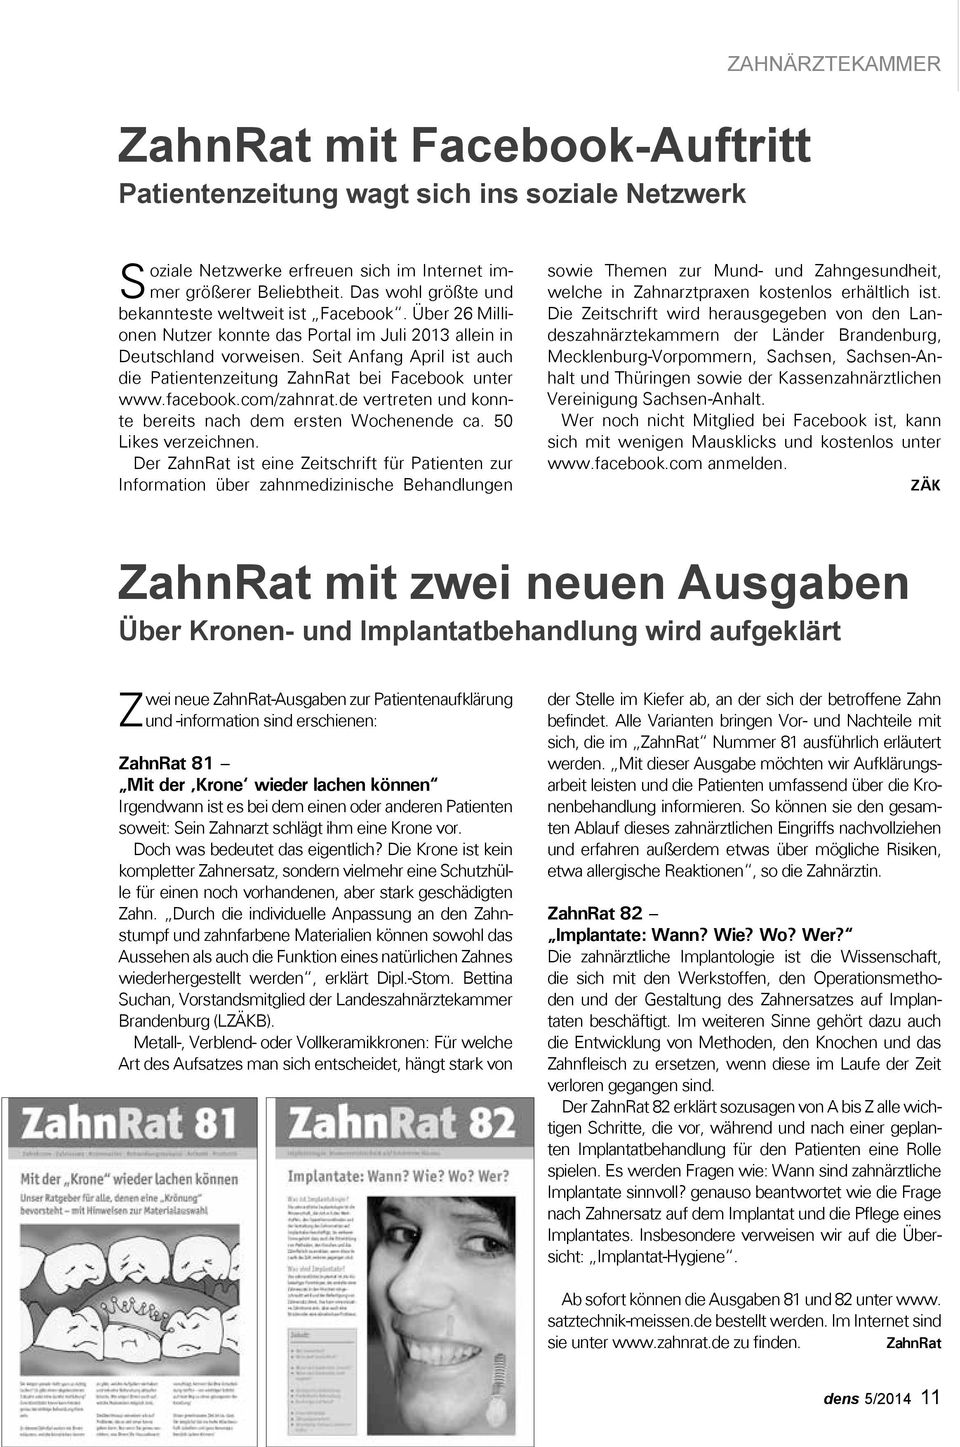 Seit Anfang April ist auch die Patientenzeitung ZahnRat bei Facebook unter www.facebook.com/zahnrat.de vertreten und konnte bereits nach dem ersten Wochenende ca. 50 Likes verzeichnen.